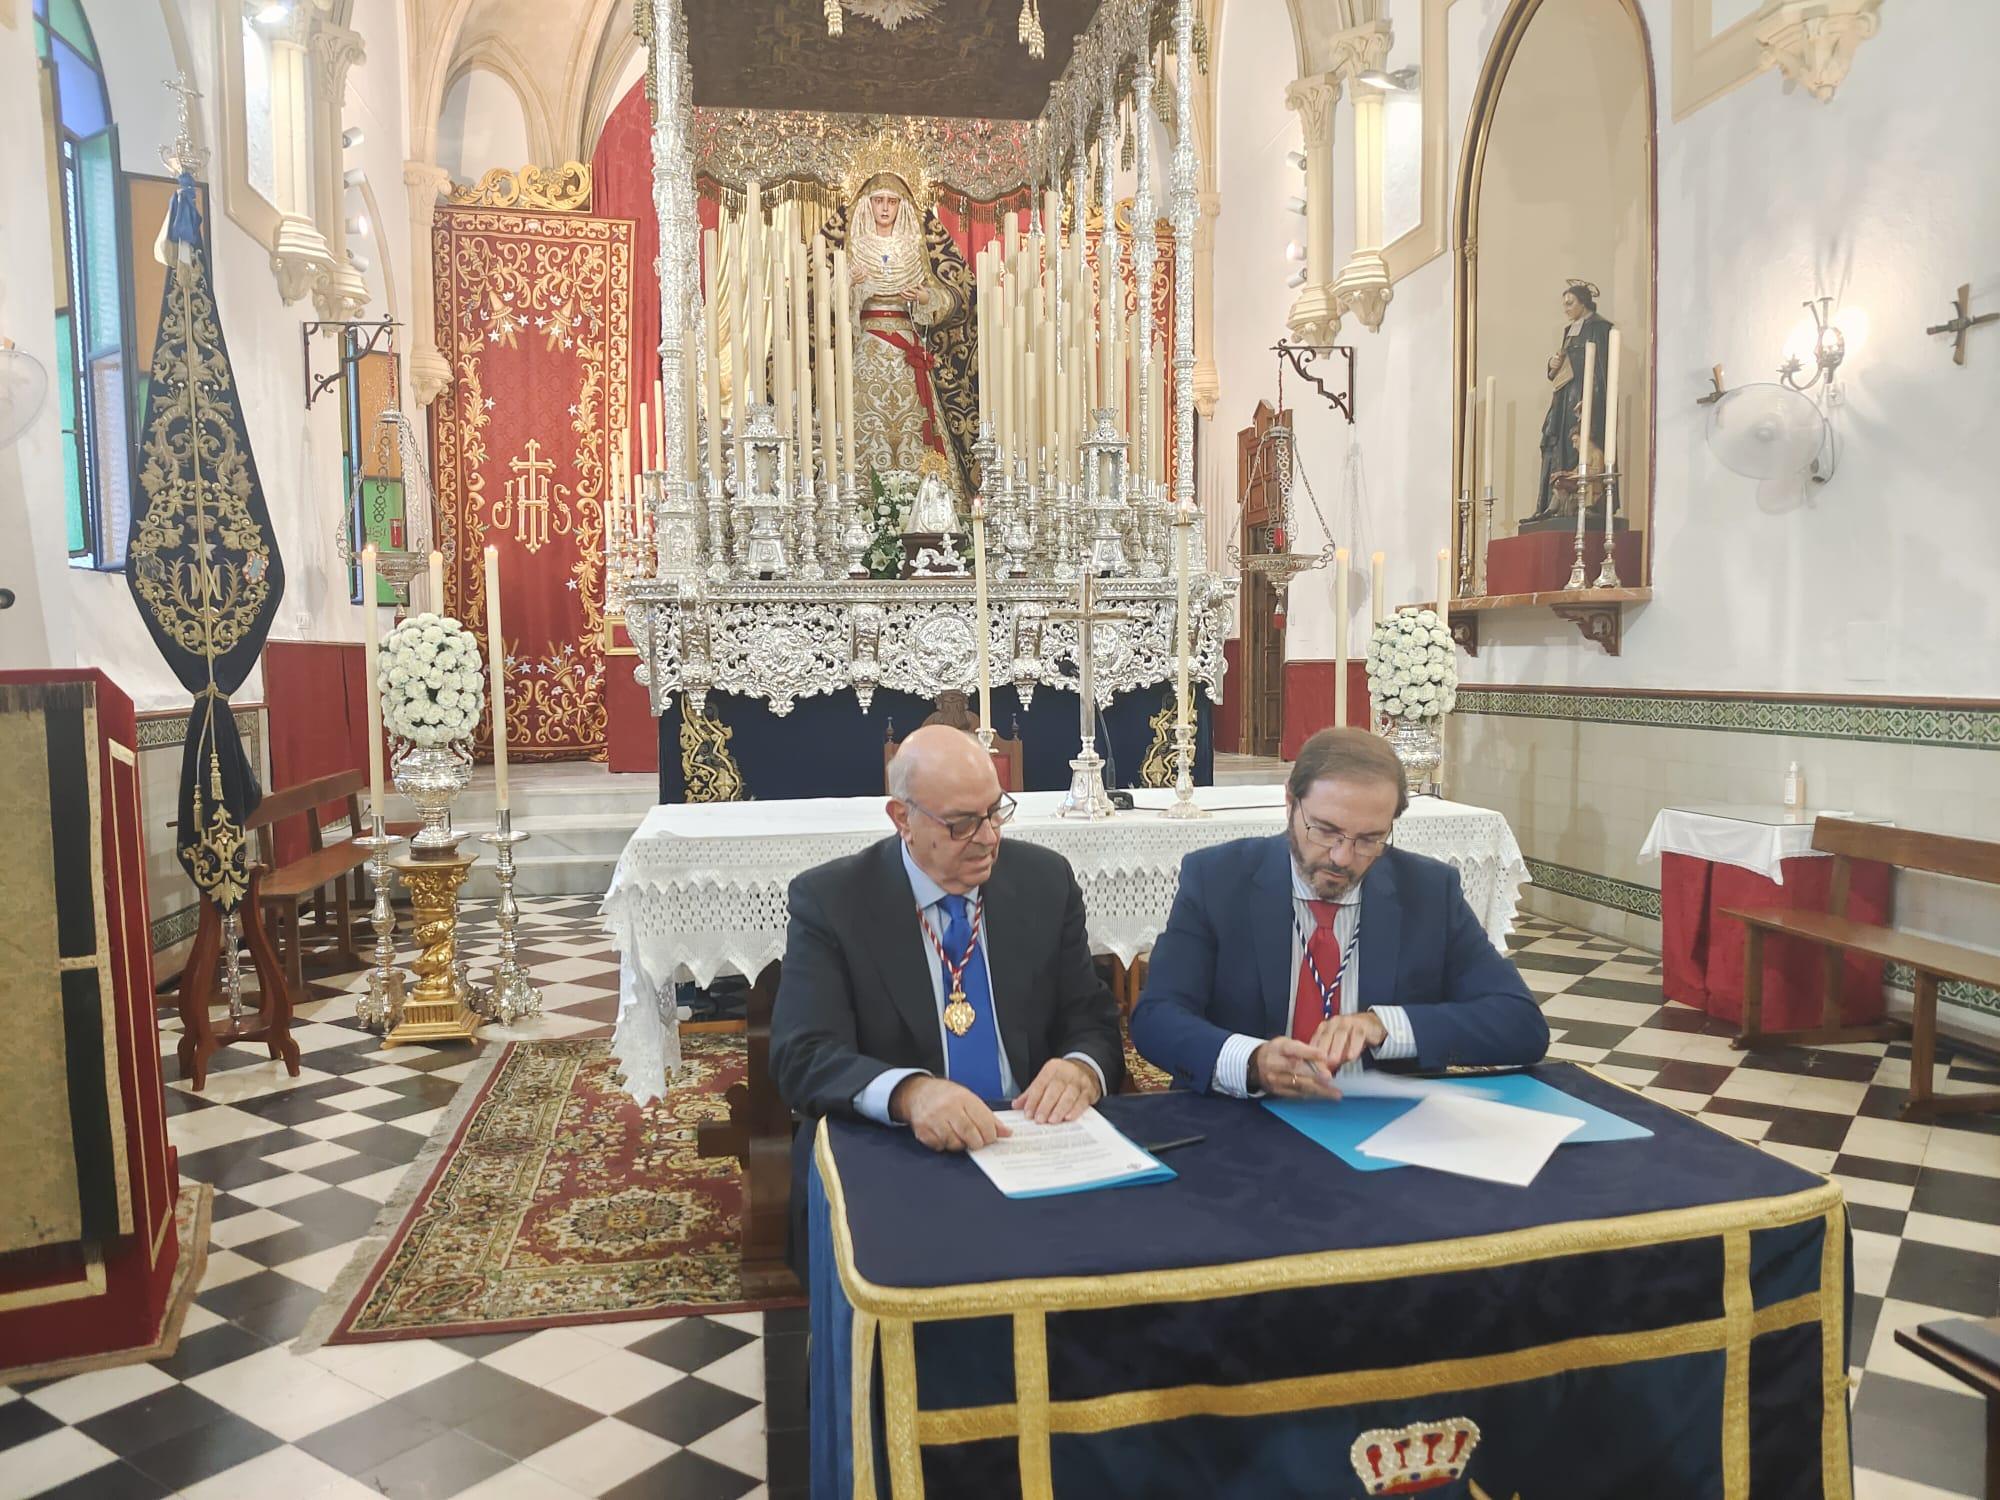 Borriquita y Cena firman la cesión del palio de la Virgen de la Paz